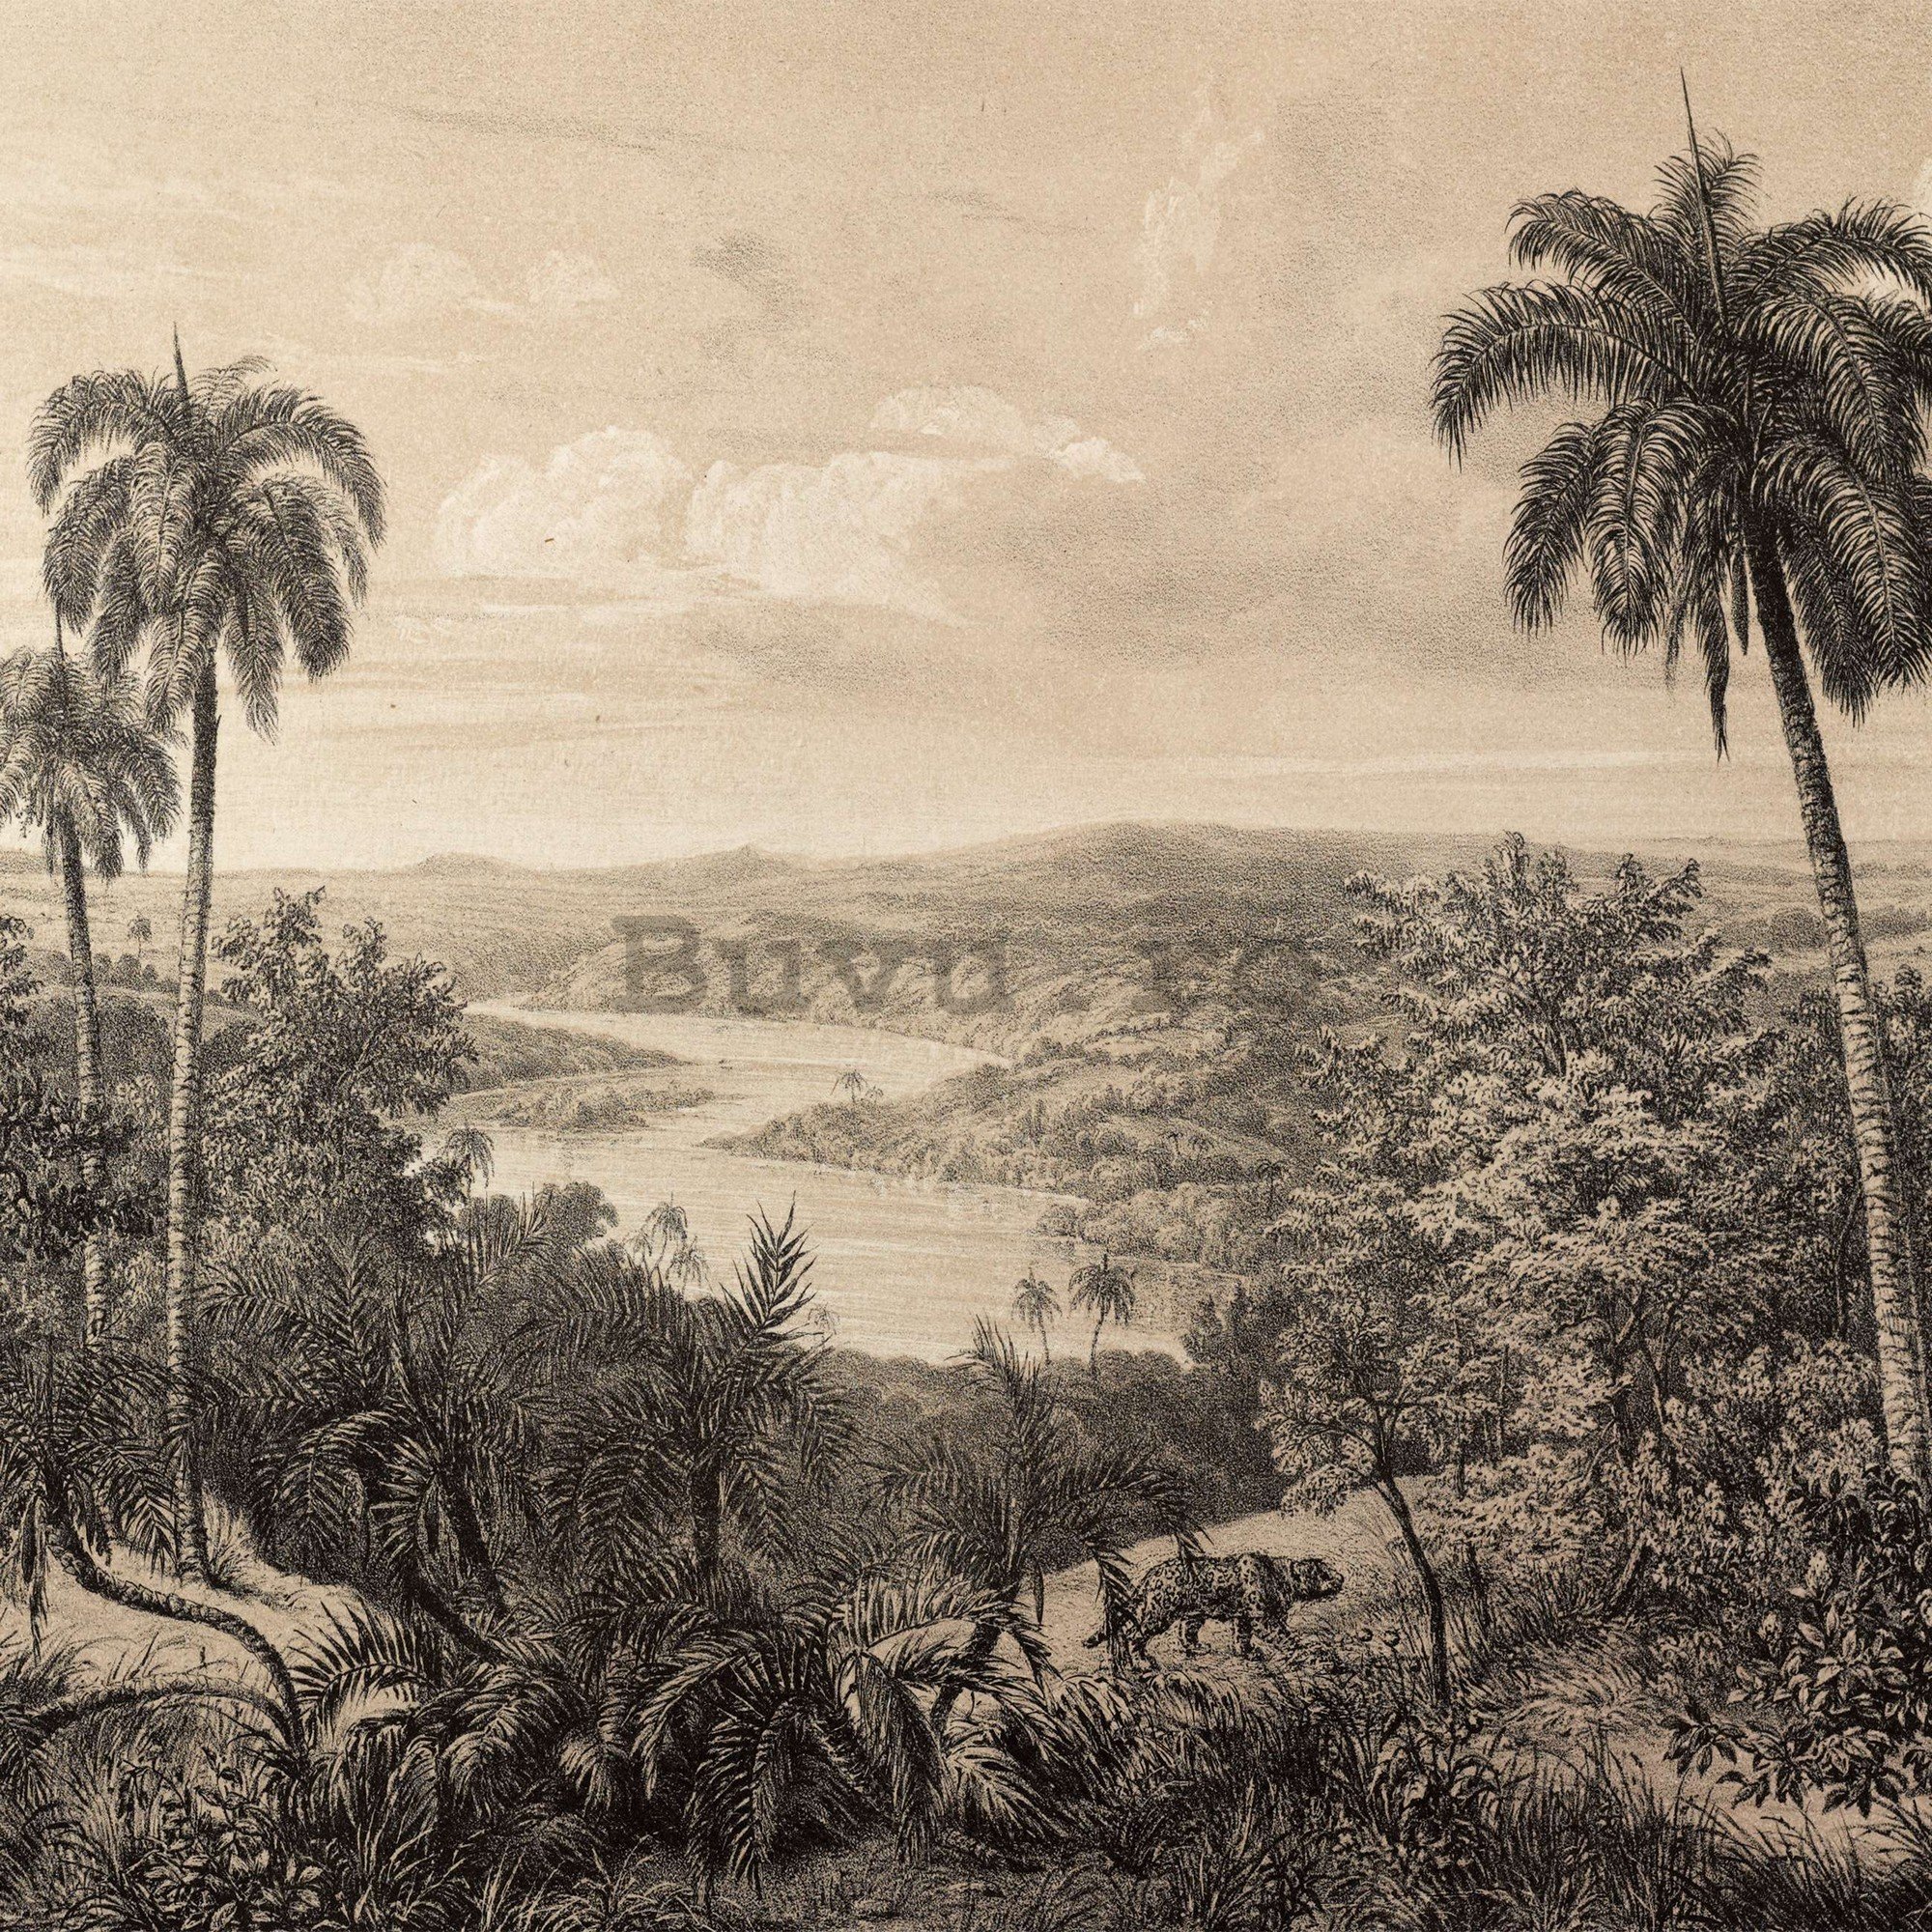 Fototapet vlies: Râul Amazon, litografie - 368x254 cm